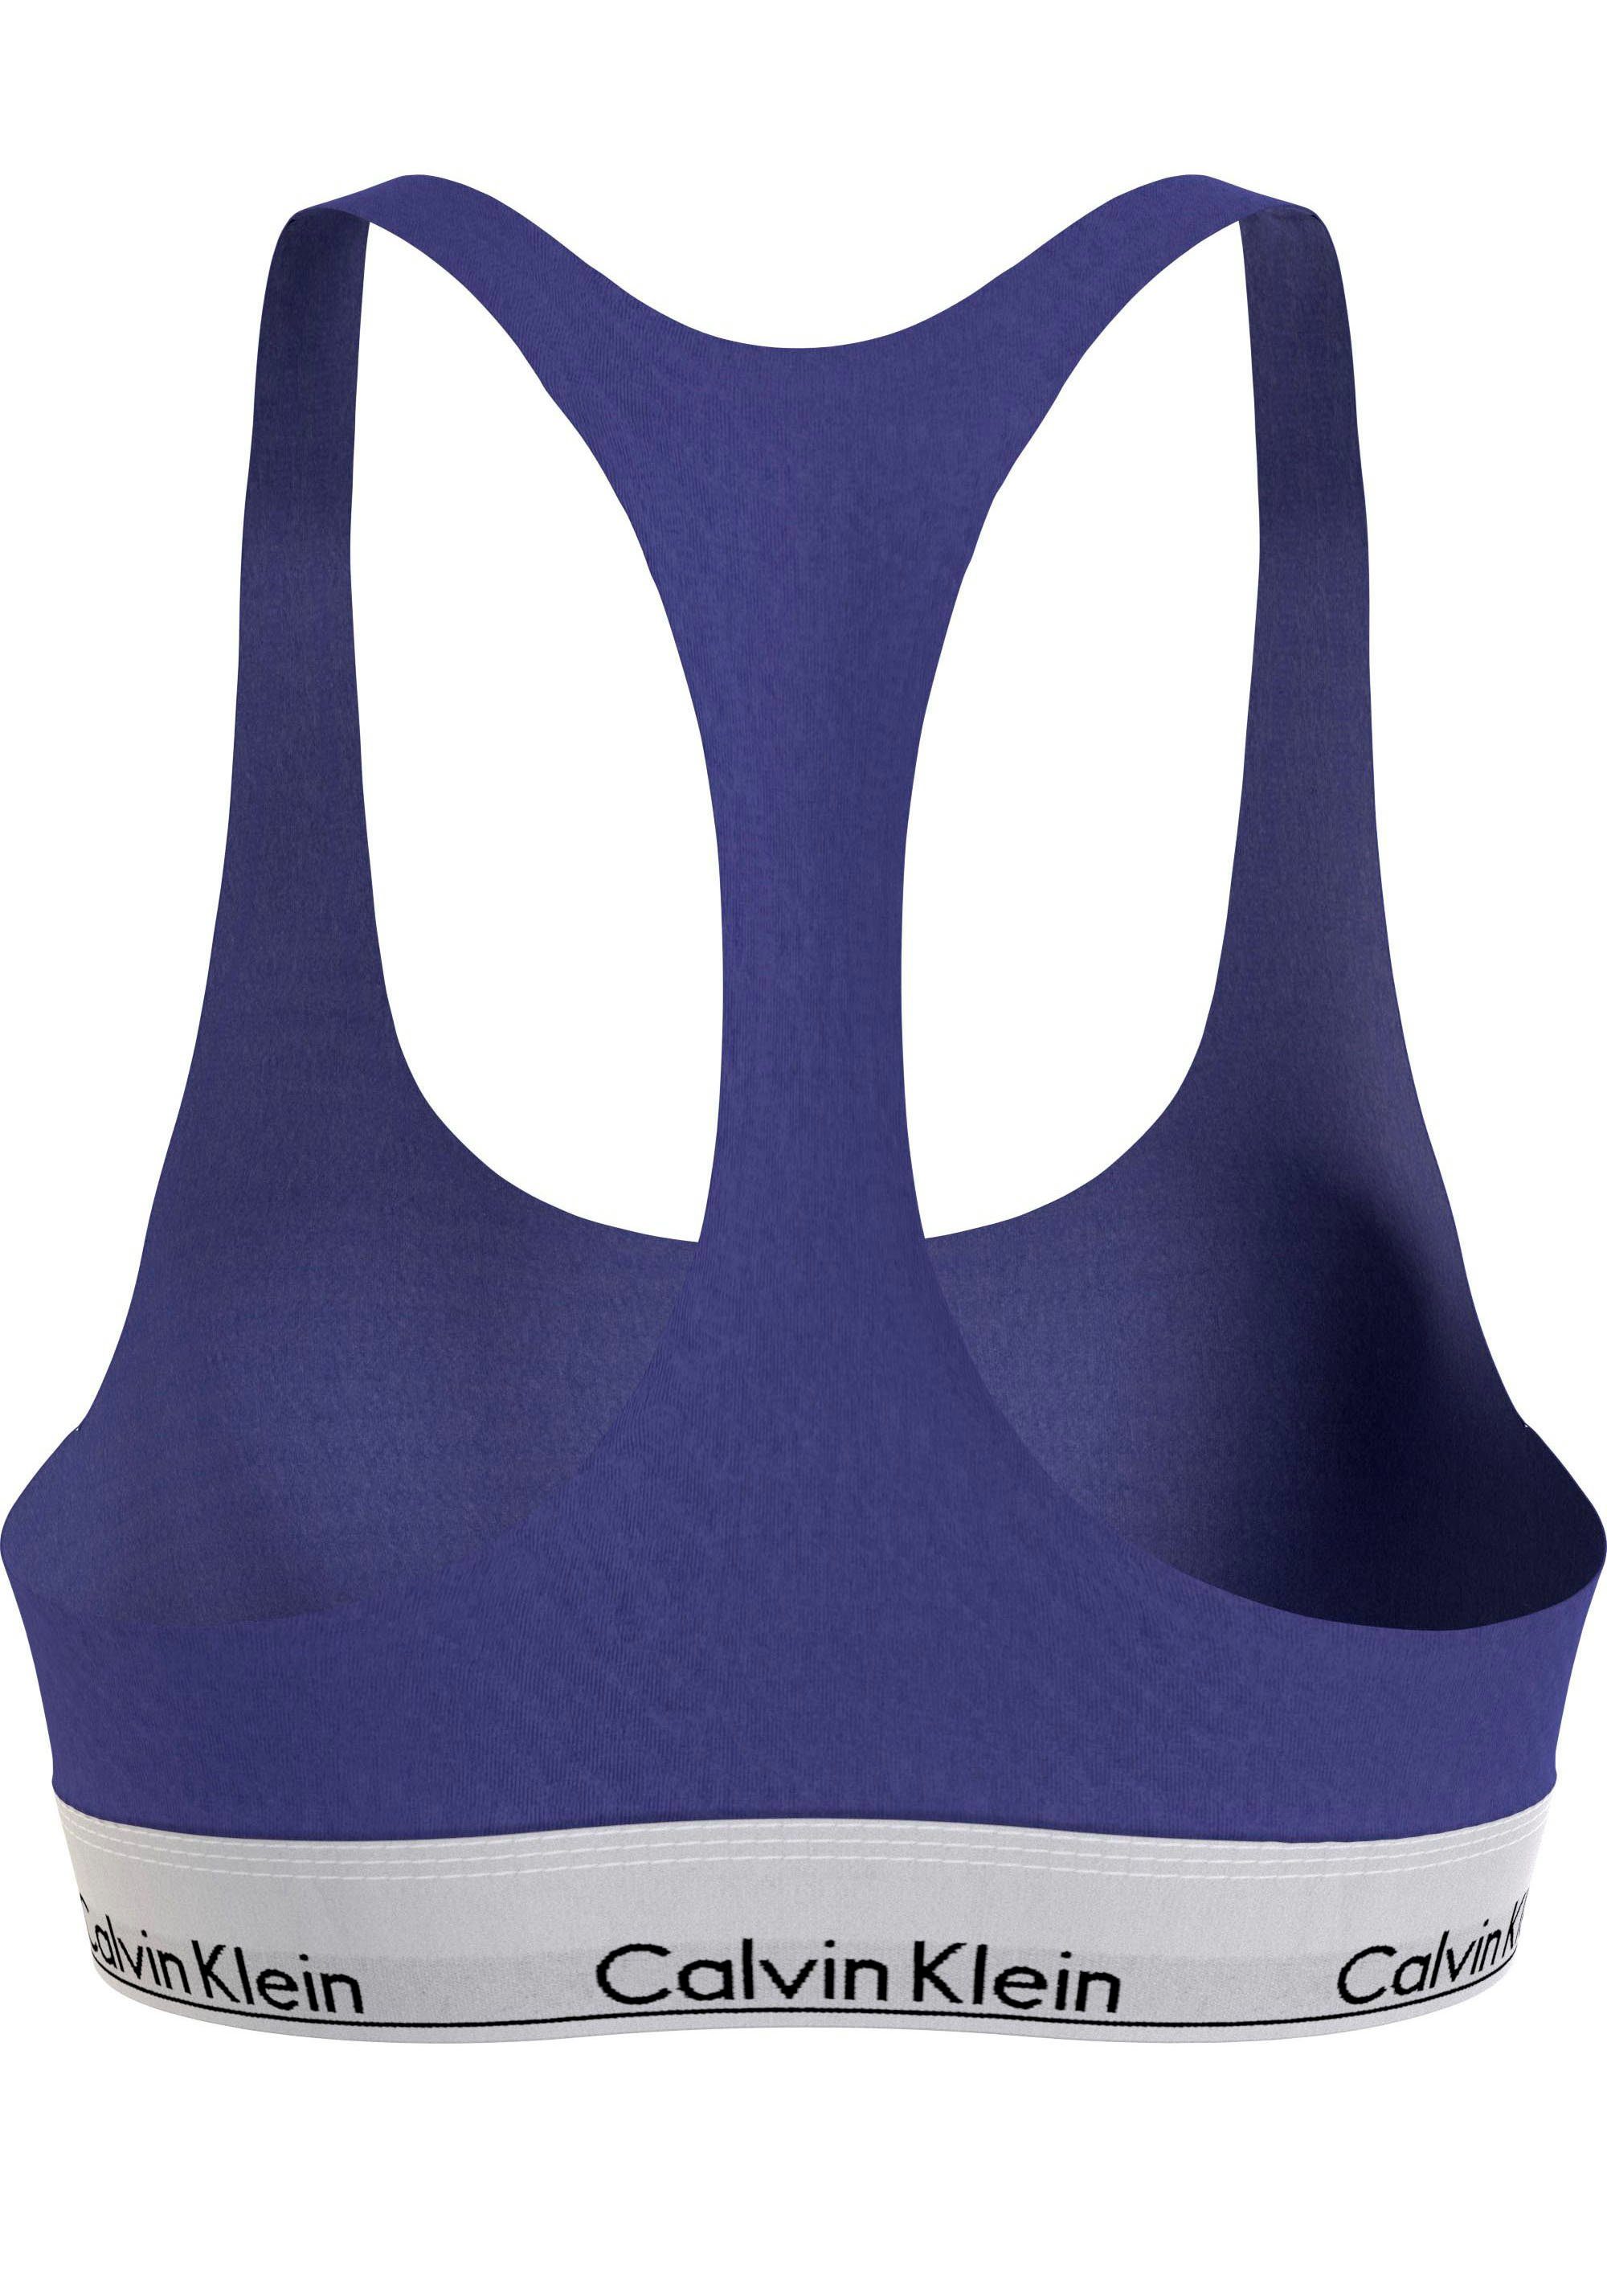 Bralette-BH in Größen Underwear Calvin Klein UNLINED (FF) blau BRALETTE Size Plus